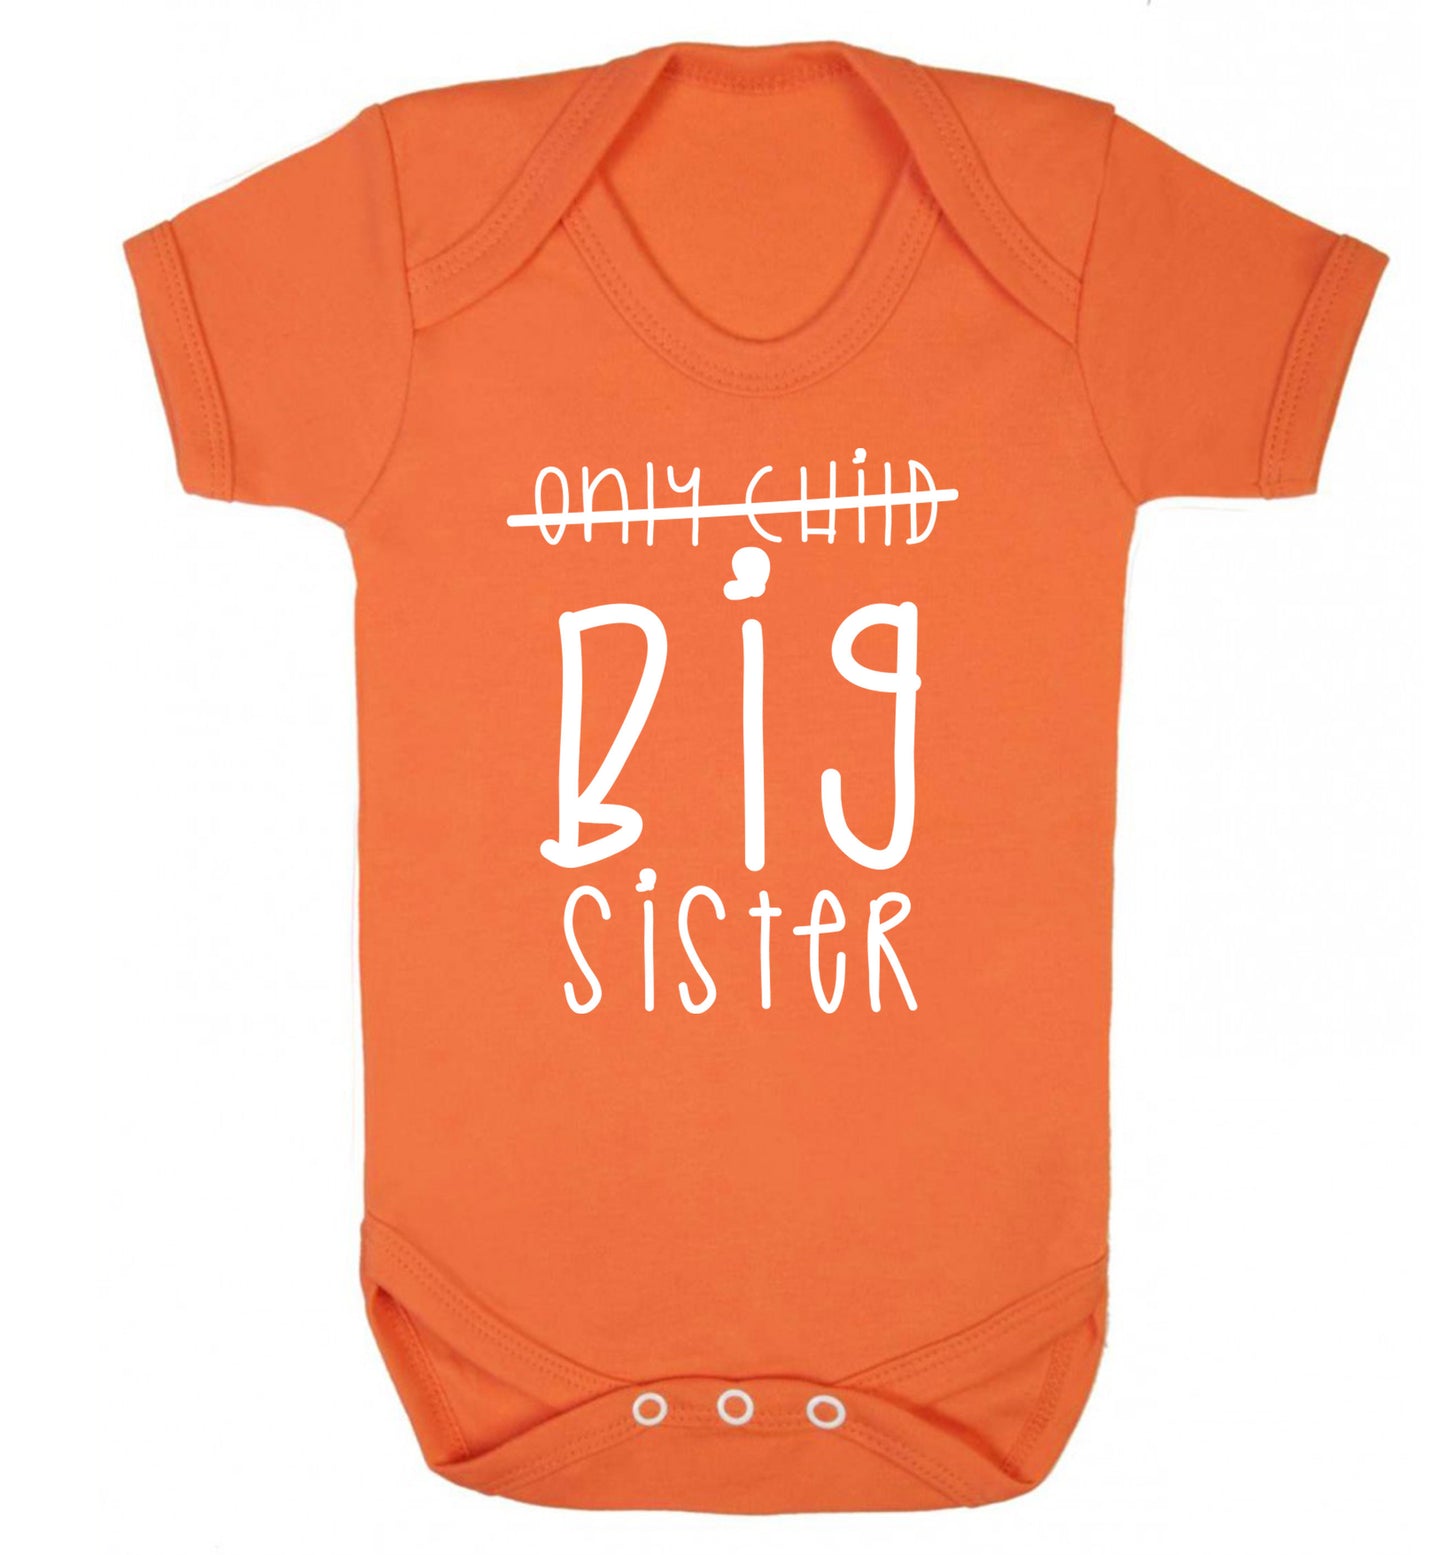 Only child big sister Baby Vest orange 18-24 months